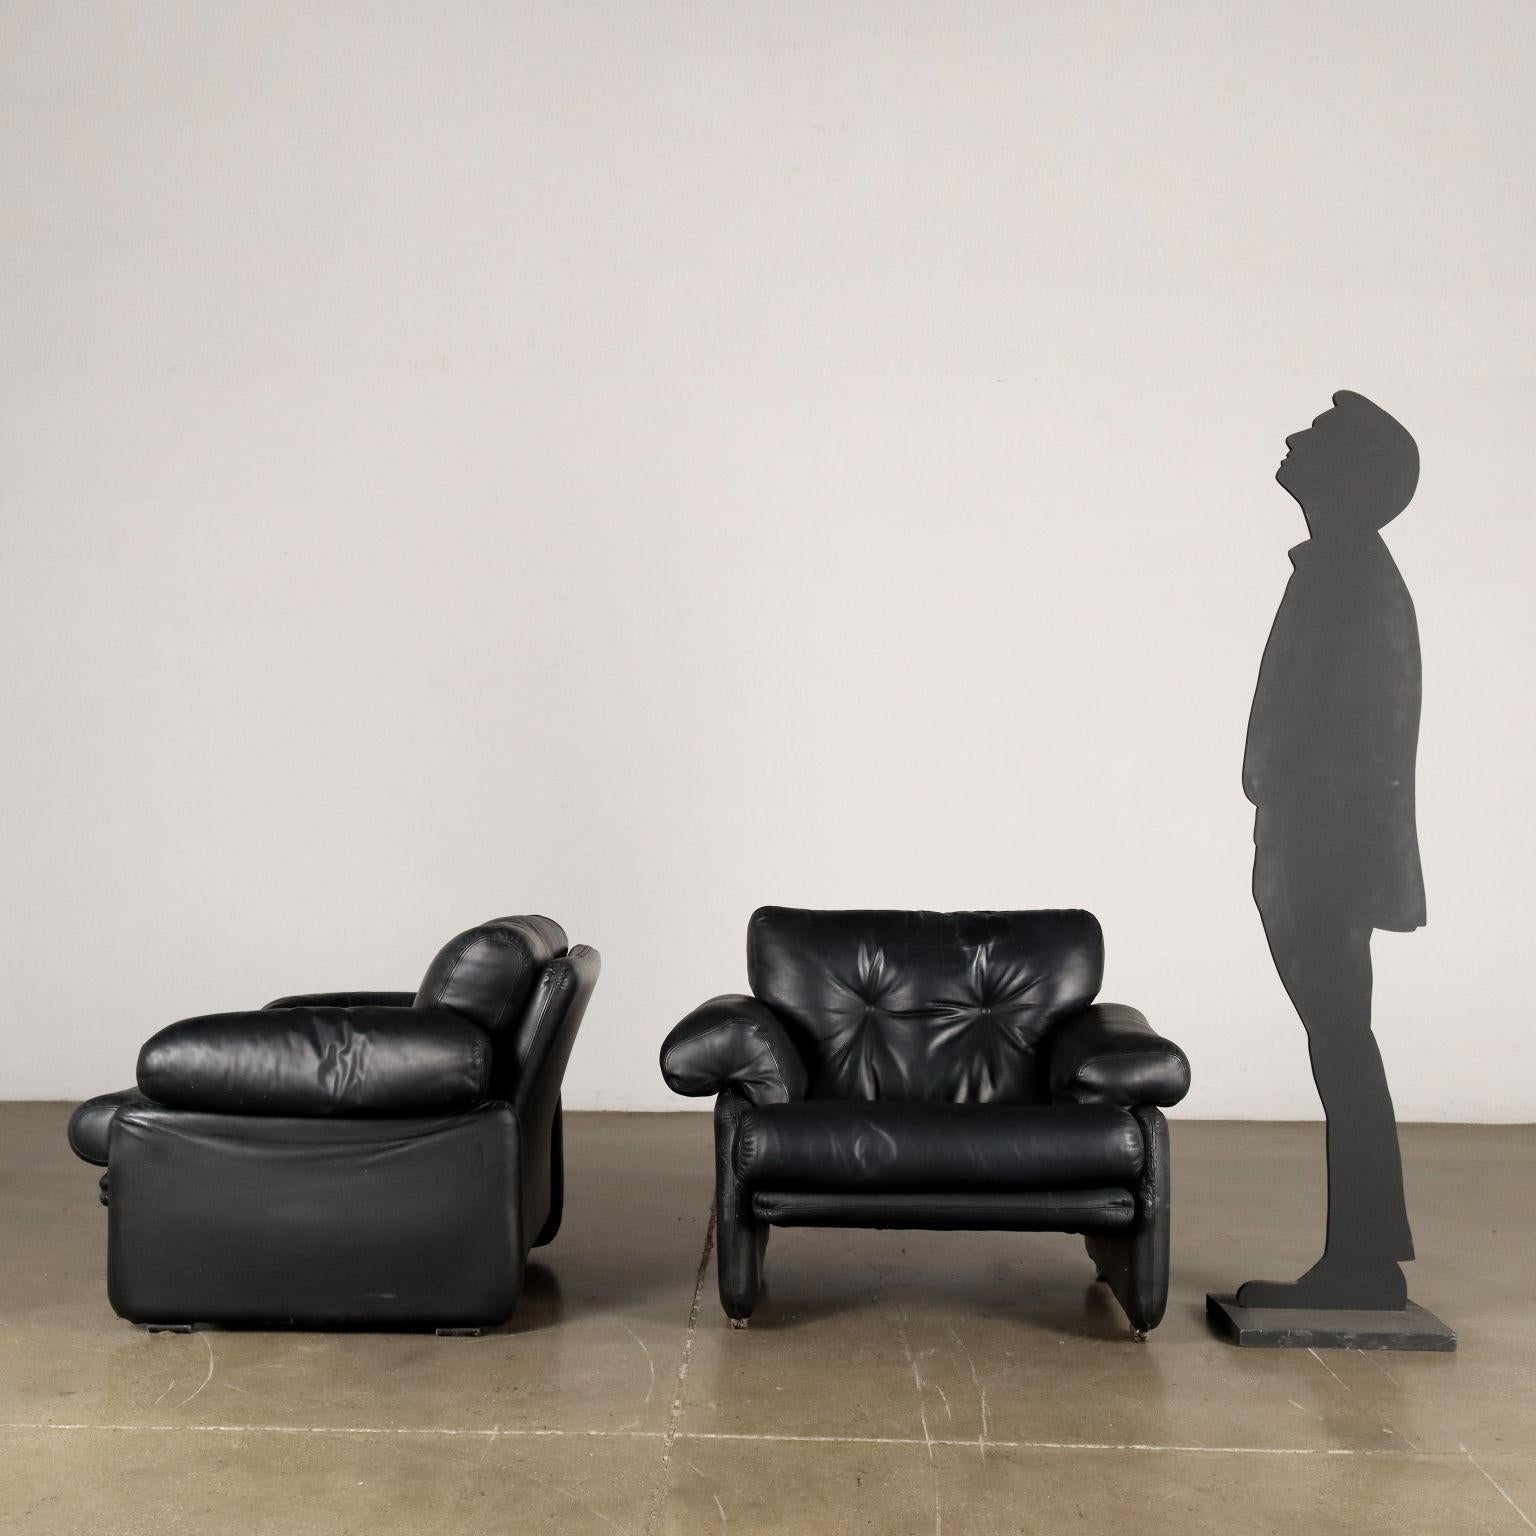 Ikonisches Sesselpaar, entworfen von Herrn und Frau Scarpa in den 1970er Jahren, mit Schaumstoffpolsterung und schwarzem Lederbezug. Ordentlicher Zustand.